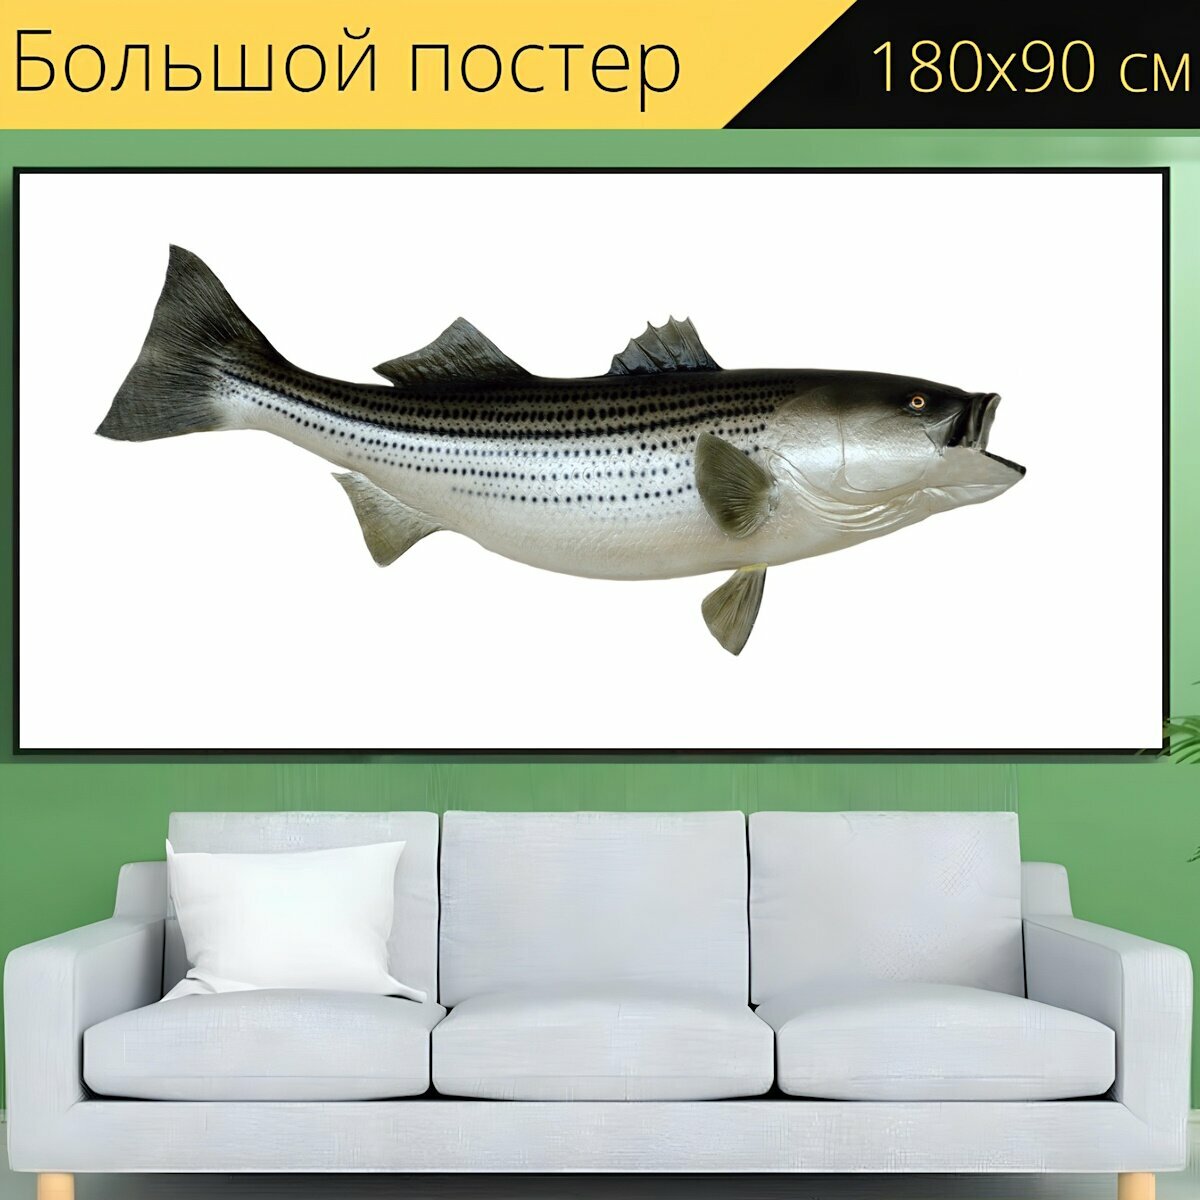 Большой постер "Полосатый окунь, рыбы, установленный" 180 x 90 см. для интерьера